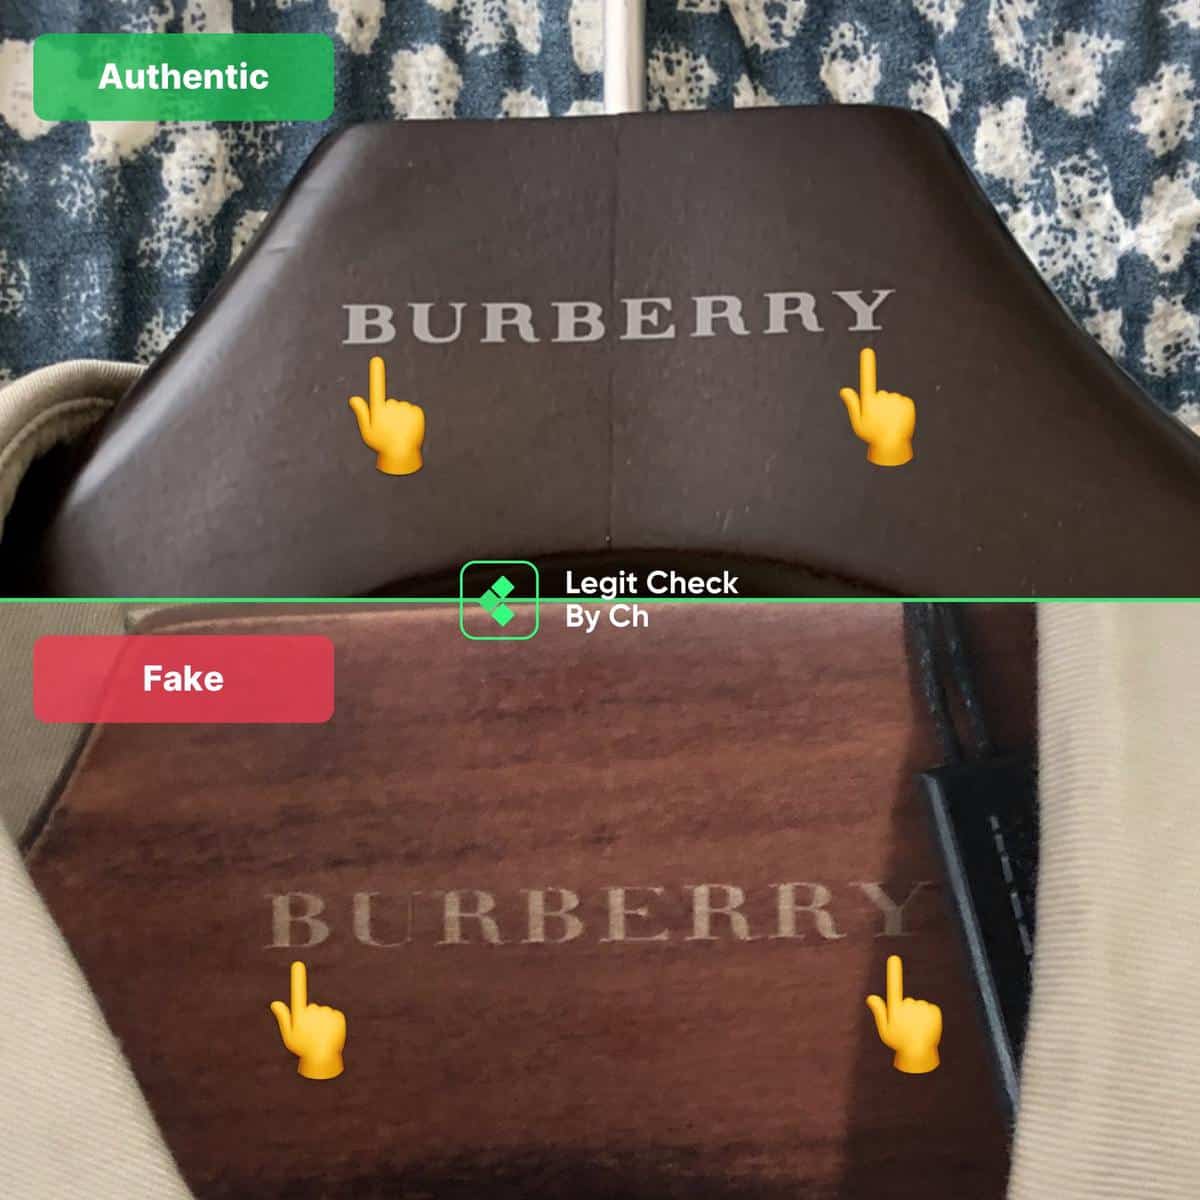 Burberry Authentication - Check Burberry Bag